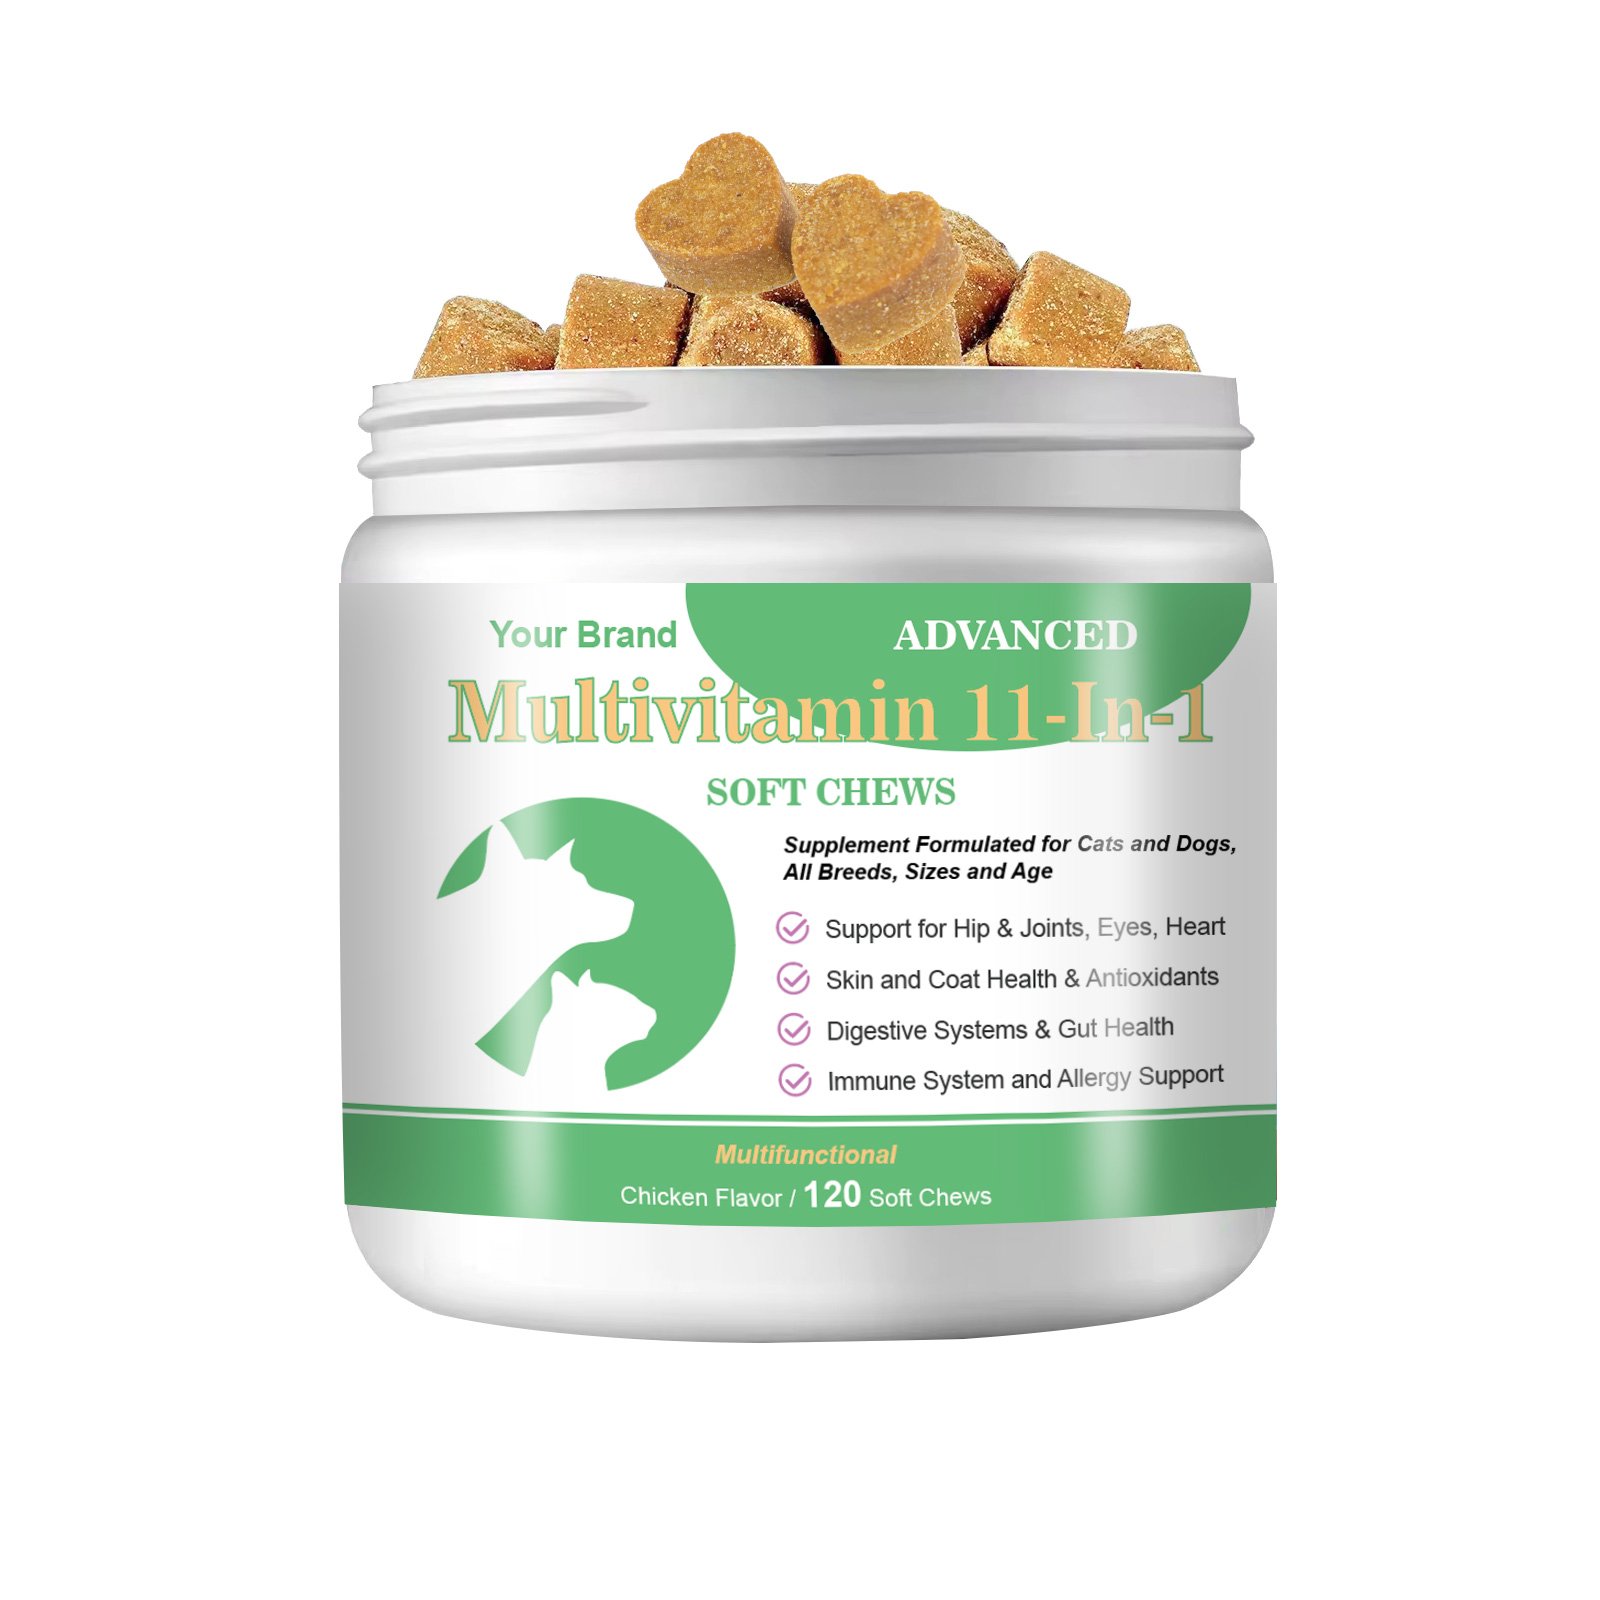 Multivitamin in 1 Soft Chews Supplement